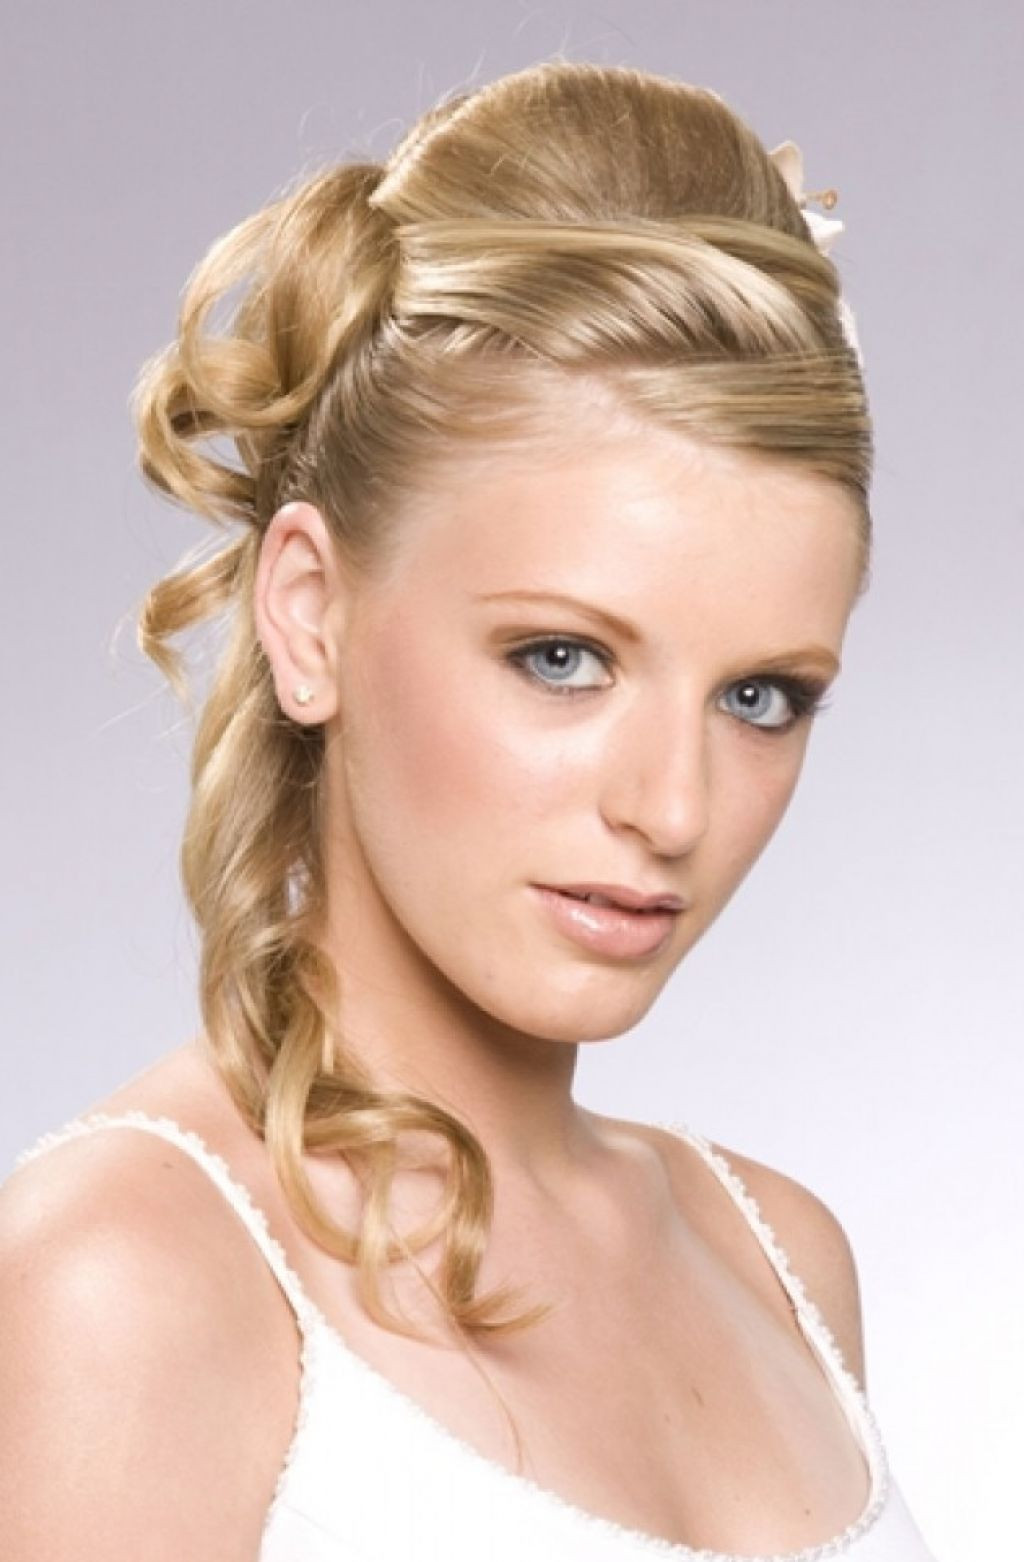 Wedding Hairstyles For Women
 30 Gorgeous Wedding Hairstyles ideas for Women MagMent